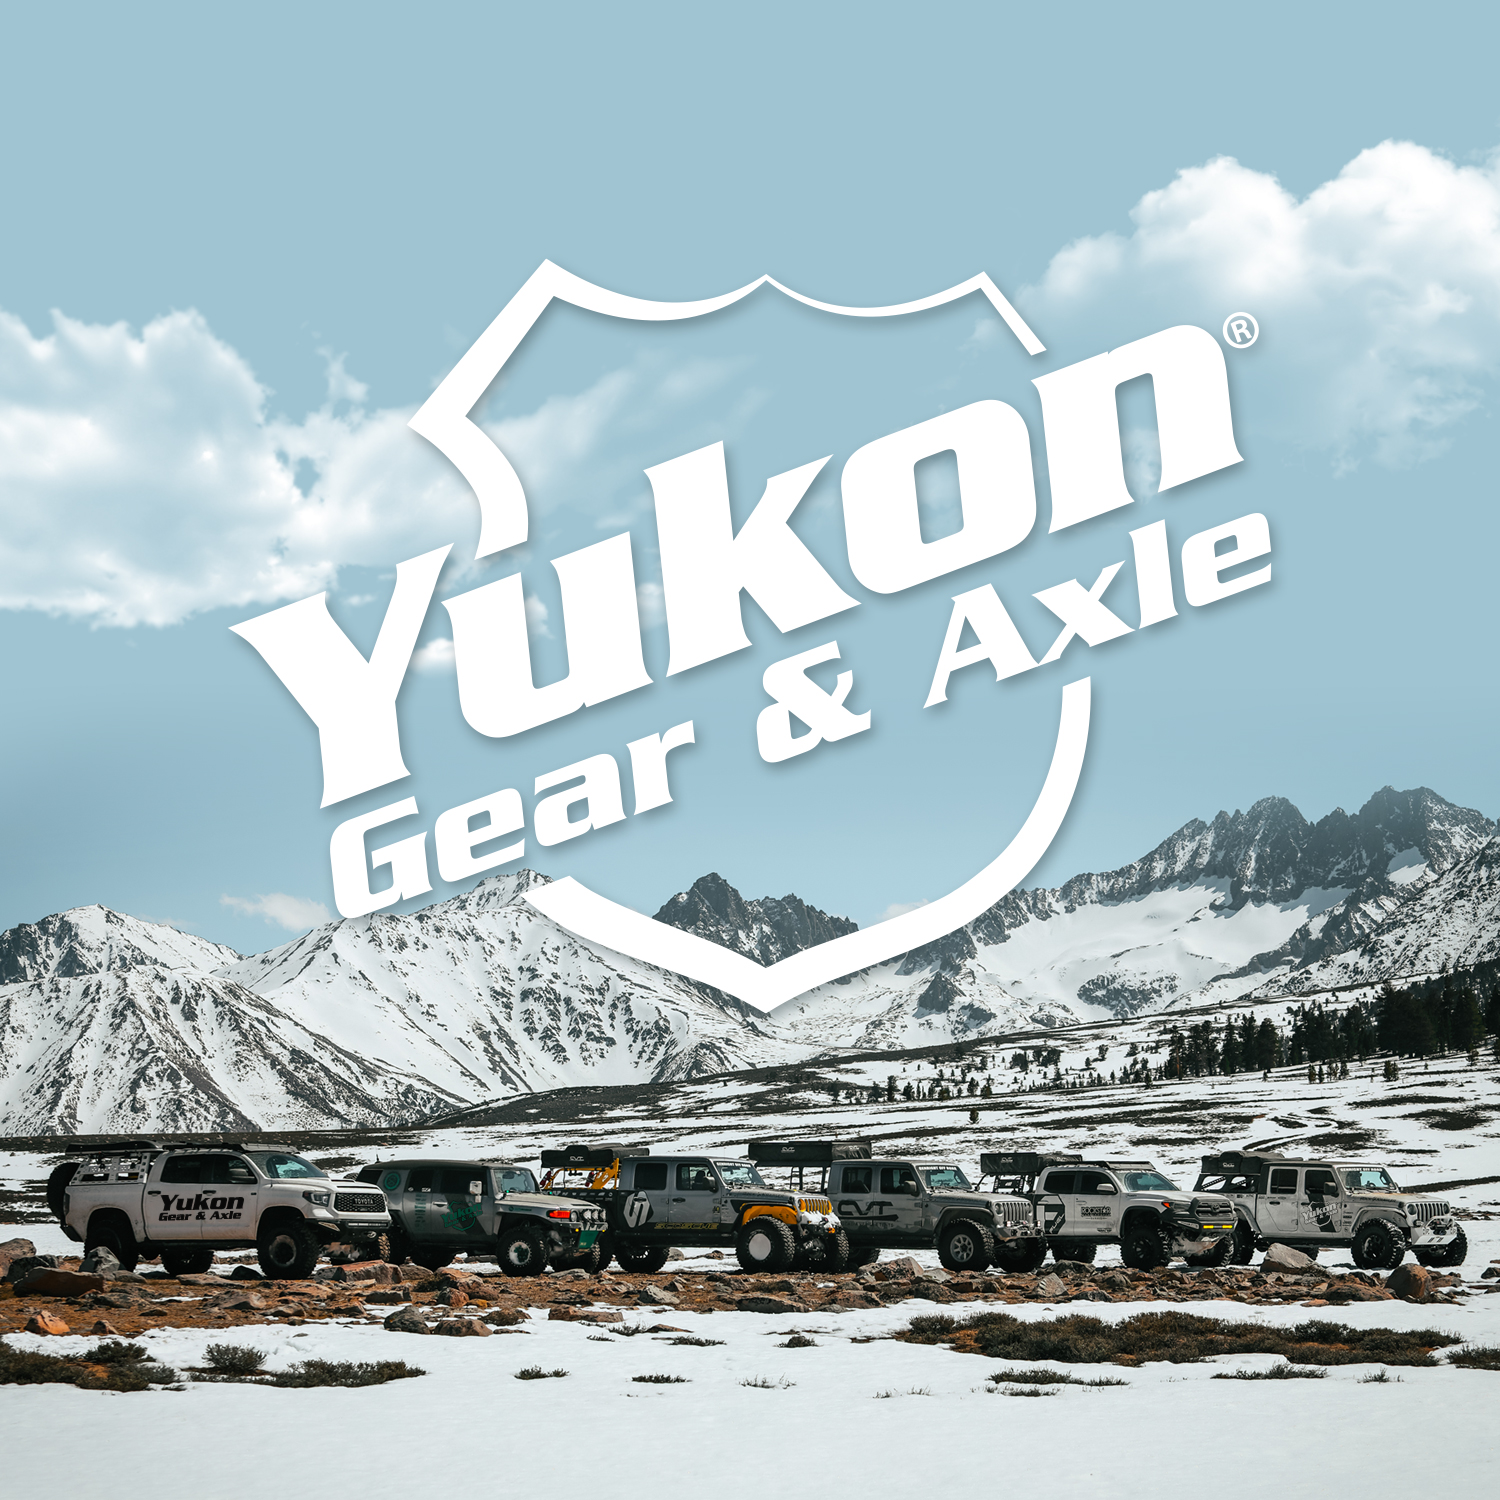 Yukon Master Overhaul kit for GM 8.2", Buick, Oldsmobile, and Pontiac 